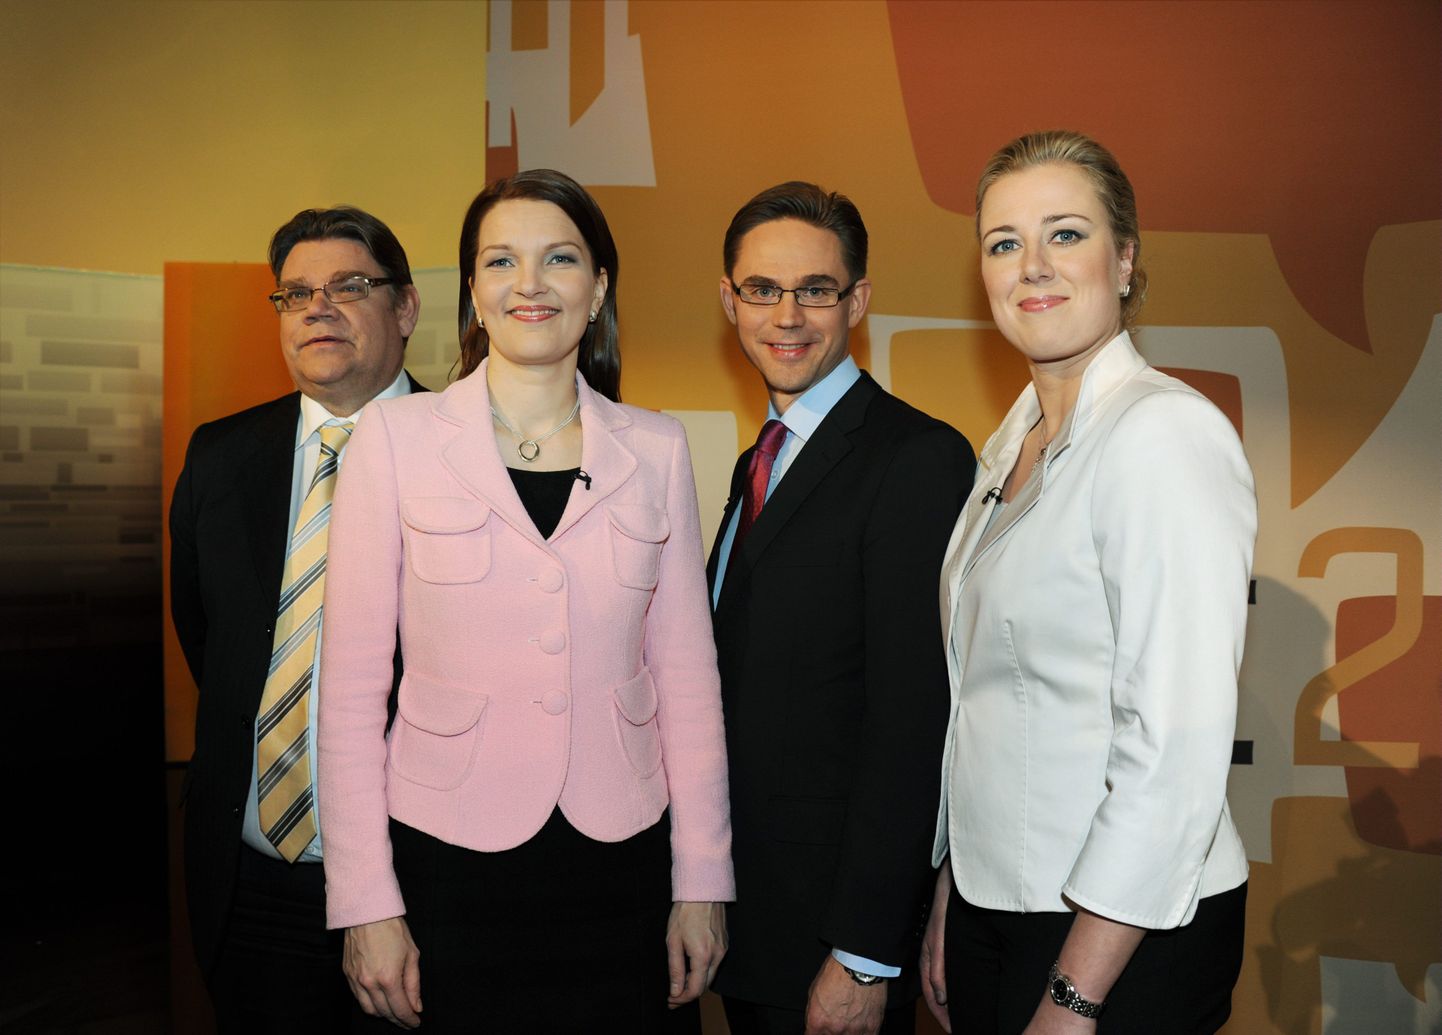 Soome nelja suurpartei liidrid (vasakult): Timo Soini (Põlisoomlased), Mari Kiviniemi (Keskerakond), Jyrki Katainen (Koondpartei) ja Jutta Urpilainen (SDP).